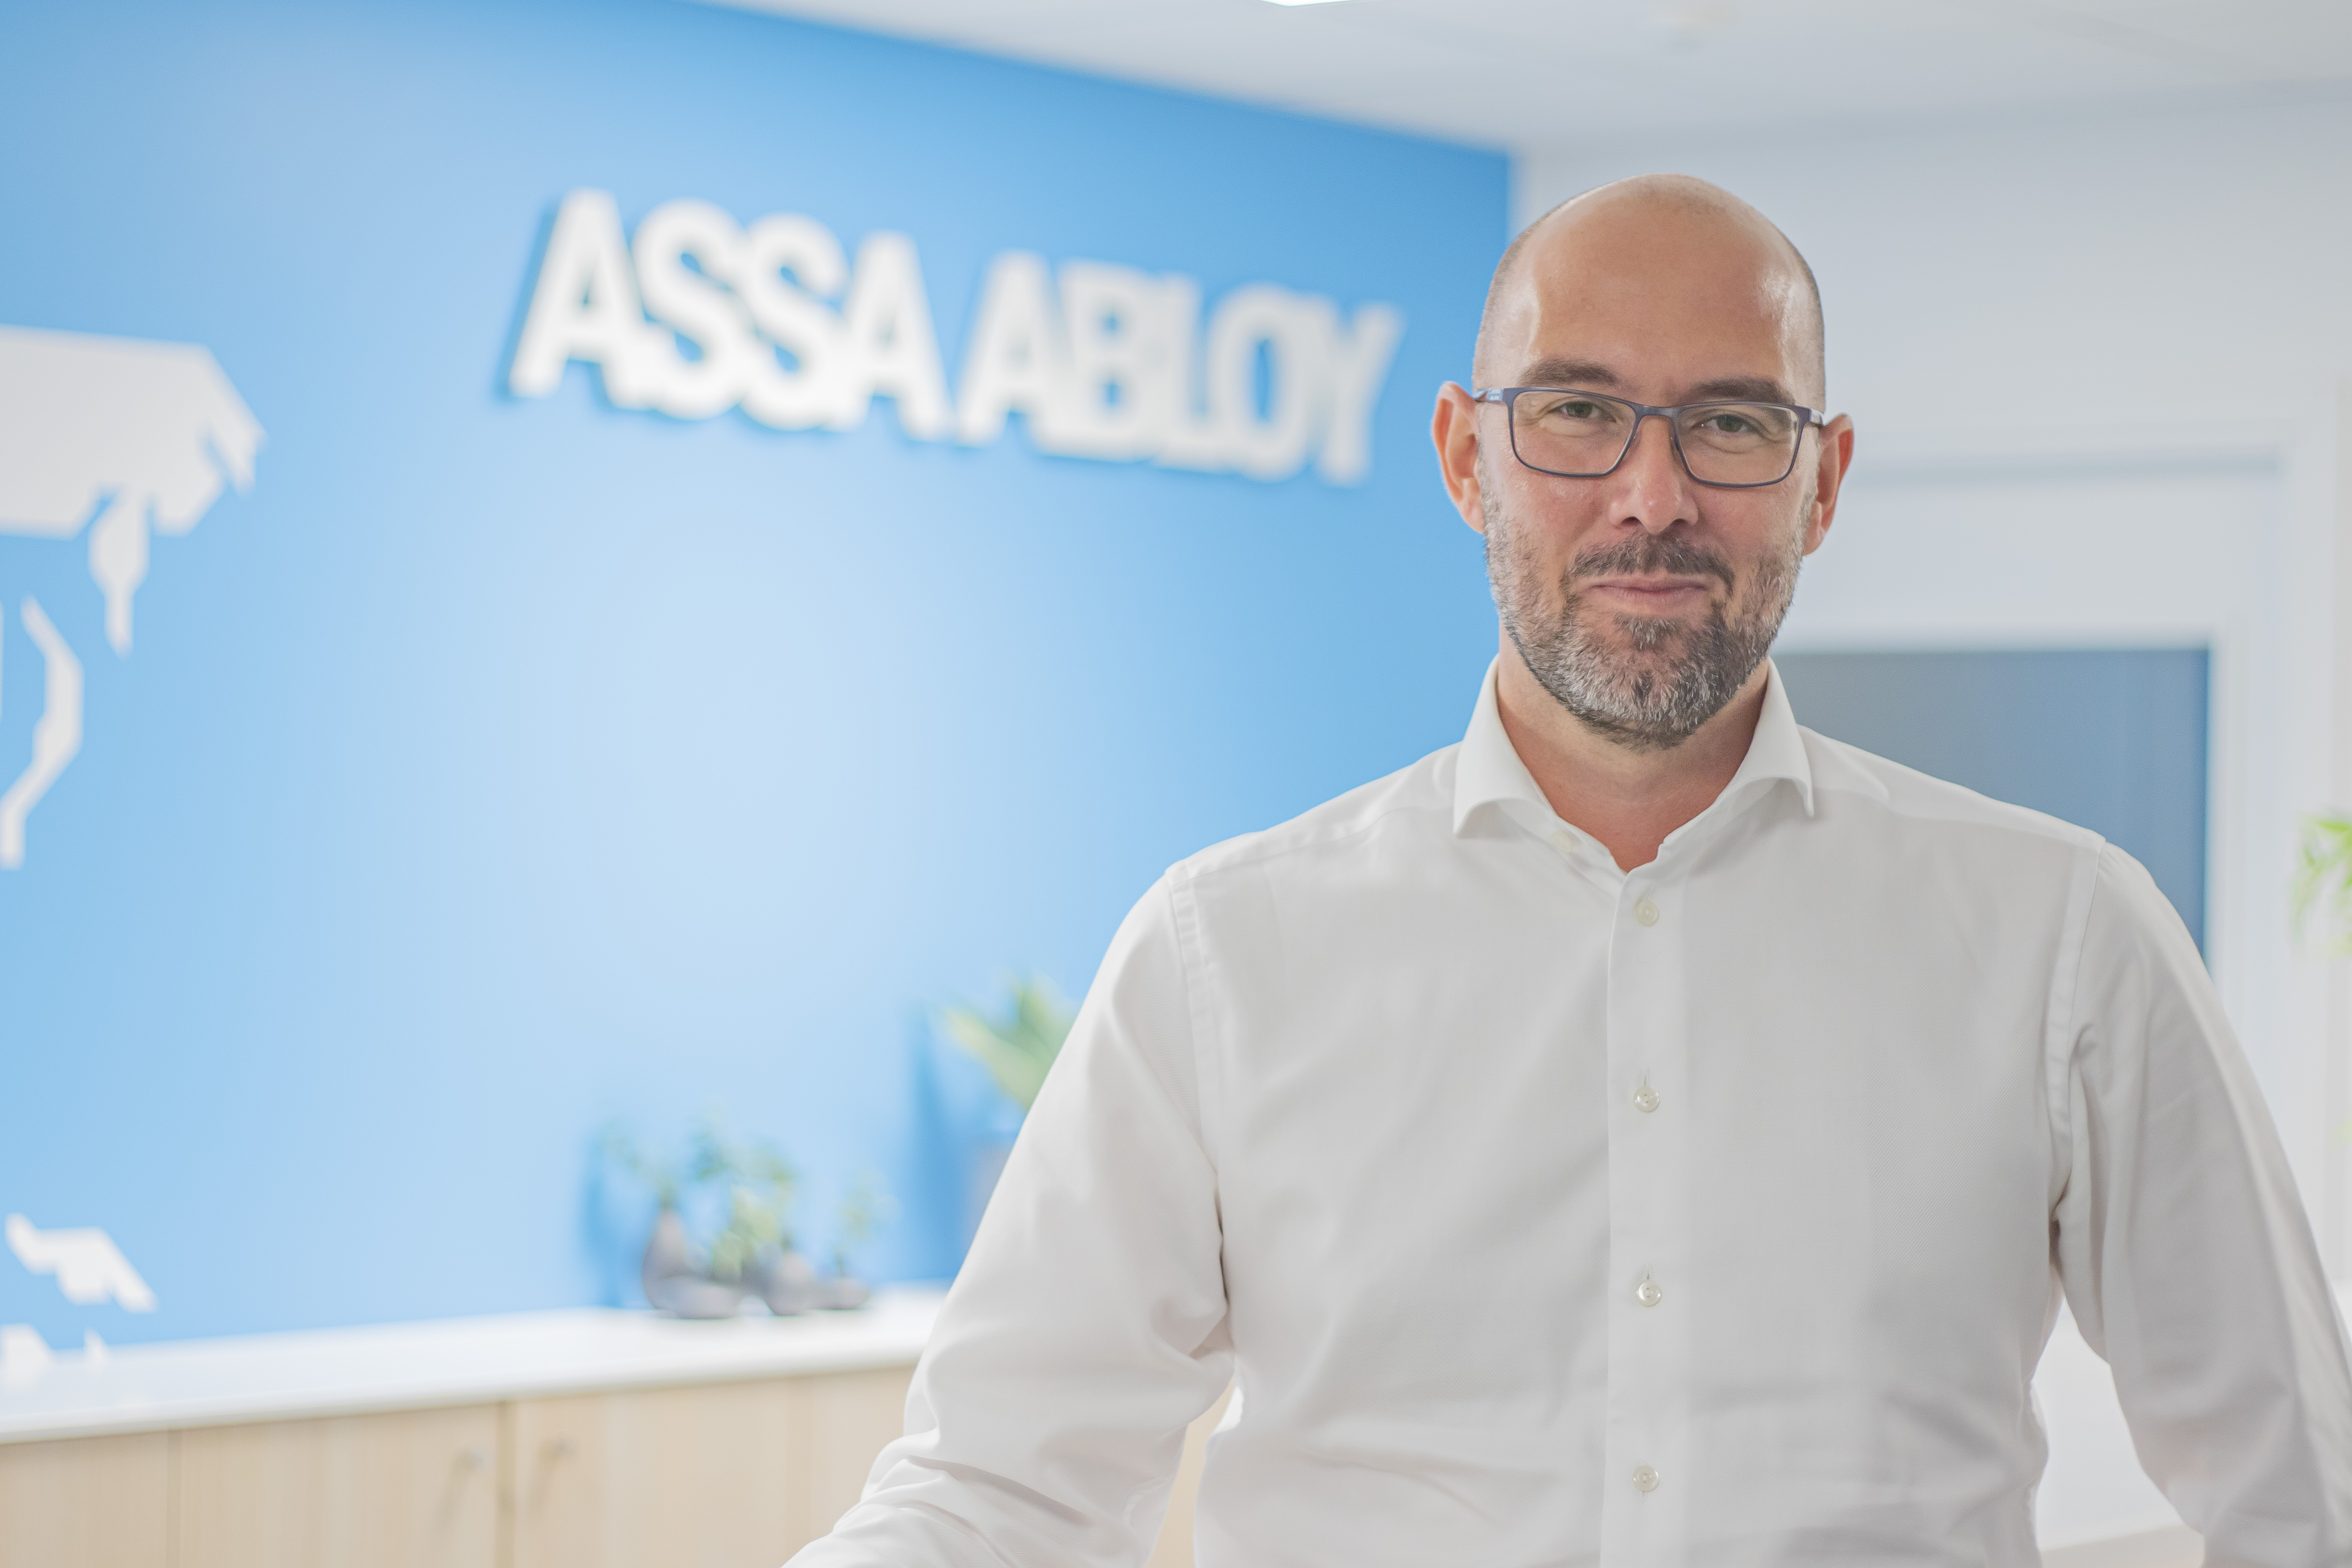 Ny VD för ASSA ABLOY Industrial Sverige